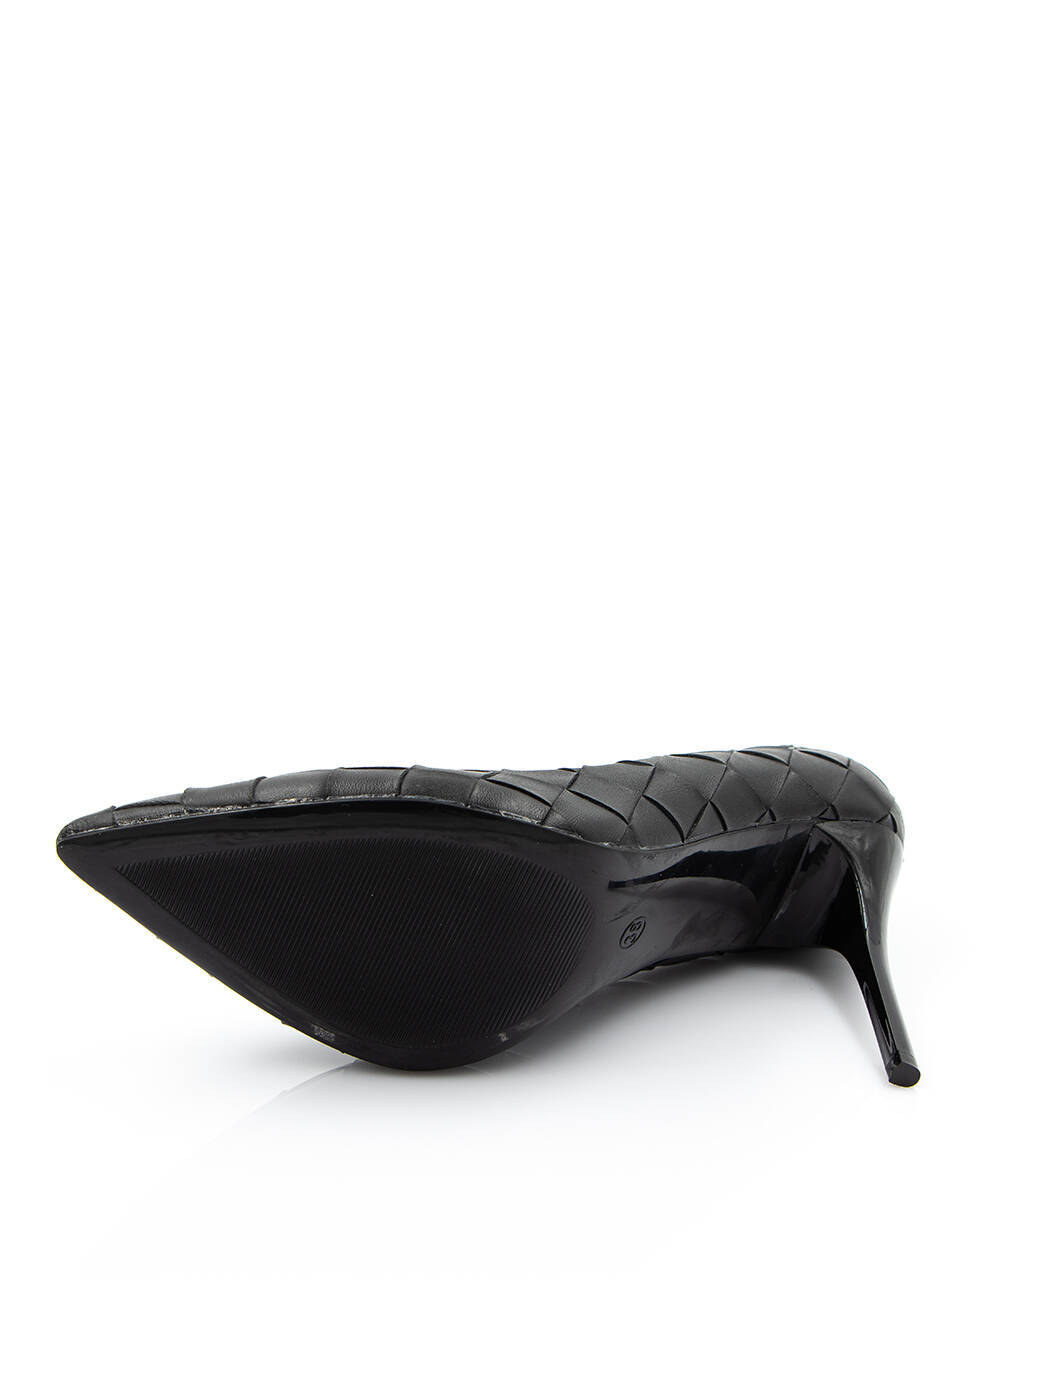 Туфли женские черные экокожа каблук шпилька демисезон от производителя AM вид 2